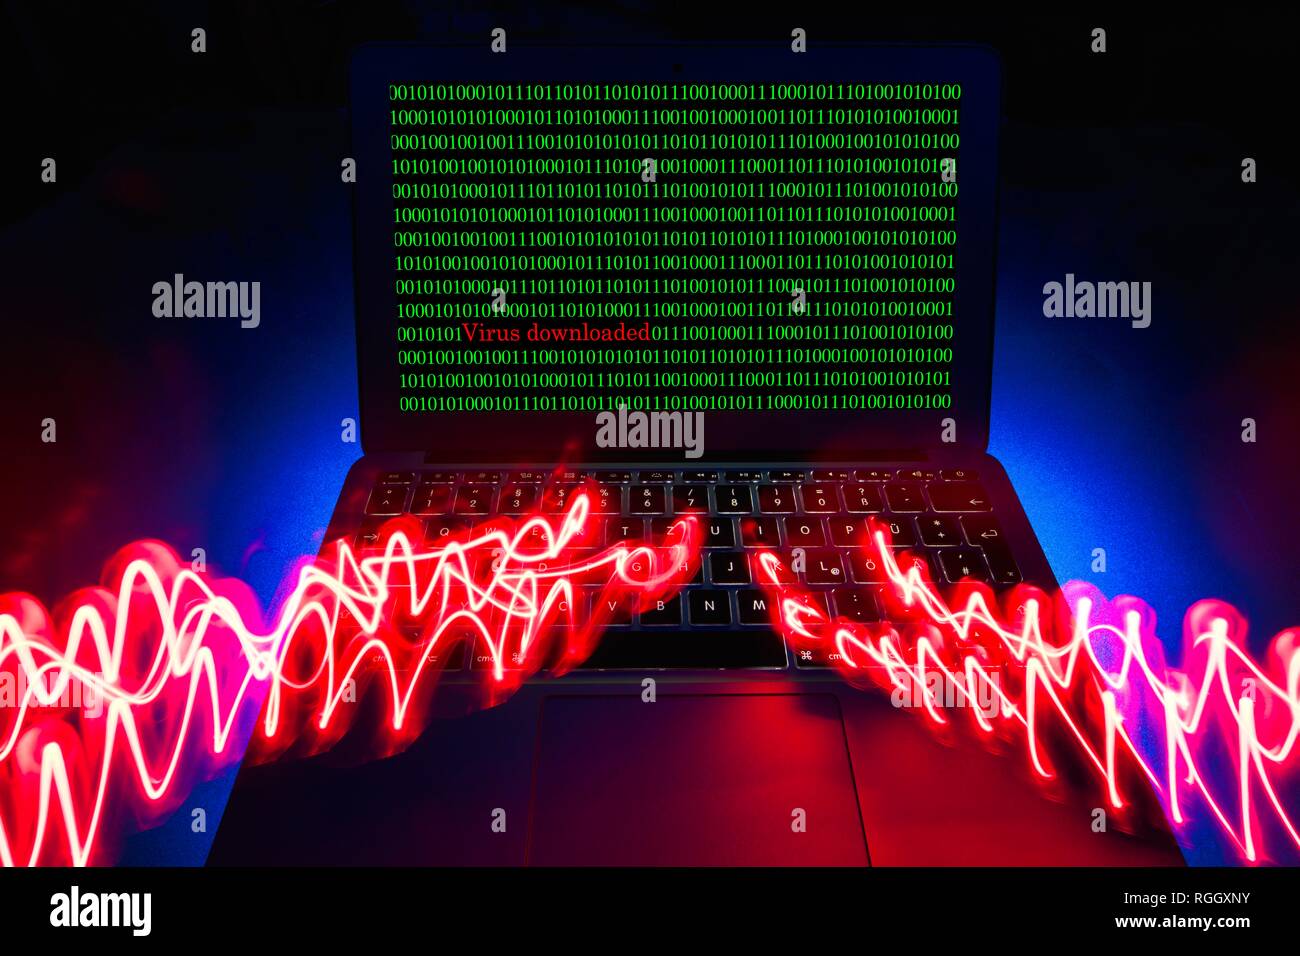 Immagine simbolo di malware e virus alarm, la criminalità informatica, la protezione dei dati, Baden-Württemberg, Germania Foto Stock